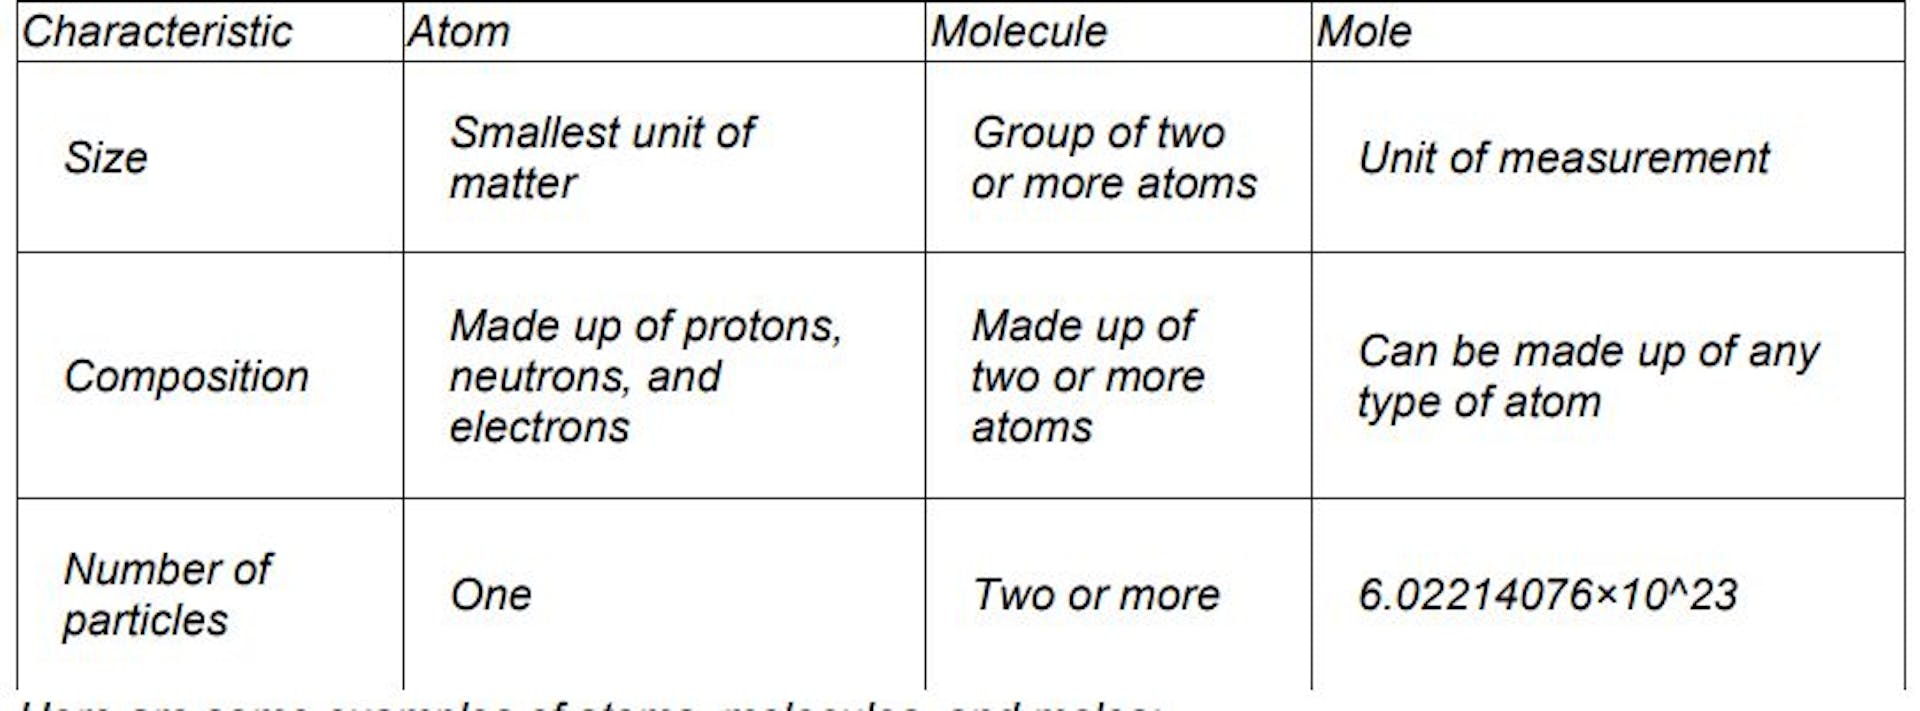 featured image - GenAIbots 如何解释原子、分子和摩尔之间的区别